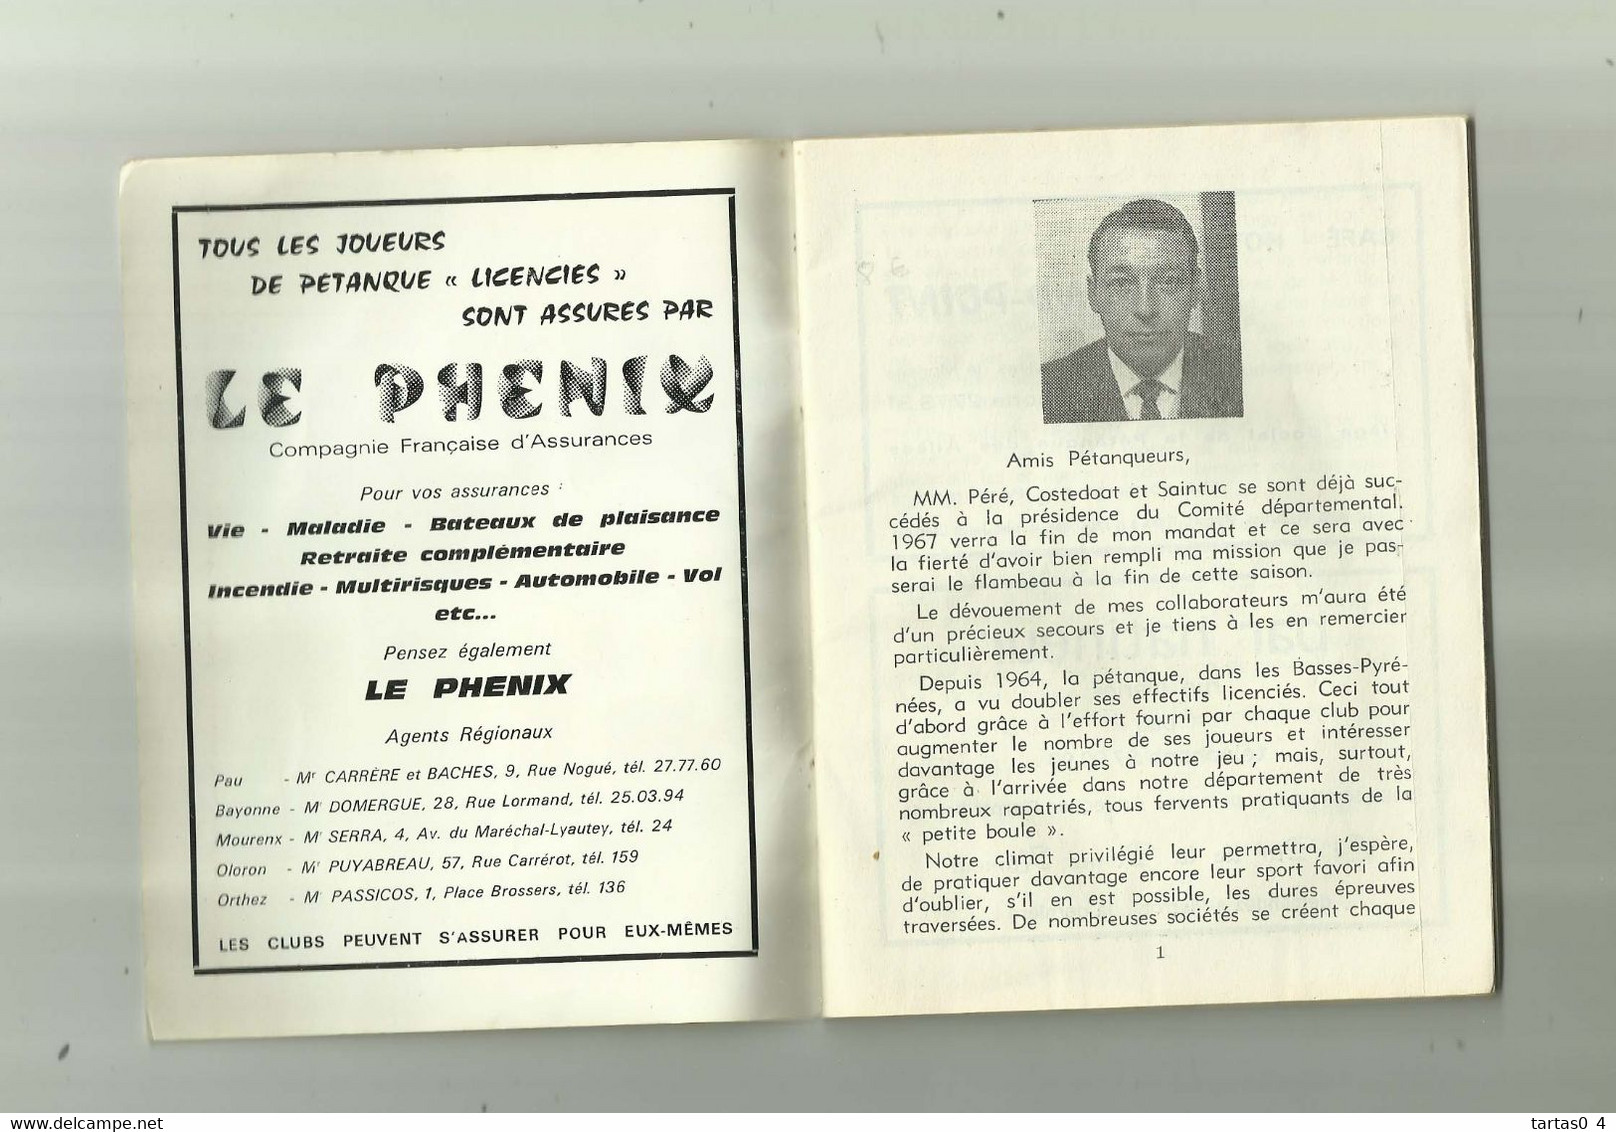 SPORT PETANQUE - DPT 64 - Federation Francaise De Petanque Calendrier 1967 Comite Basses Pyrenées ( 40 Pages ) - Boule/Pétanque